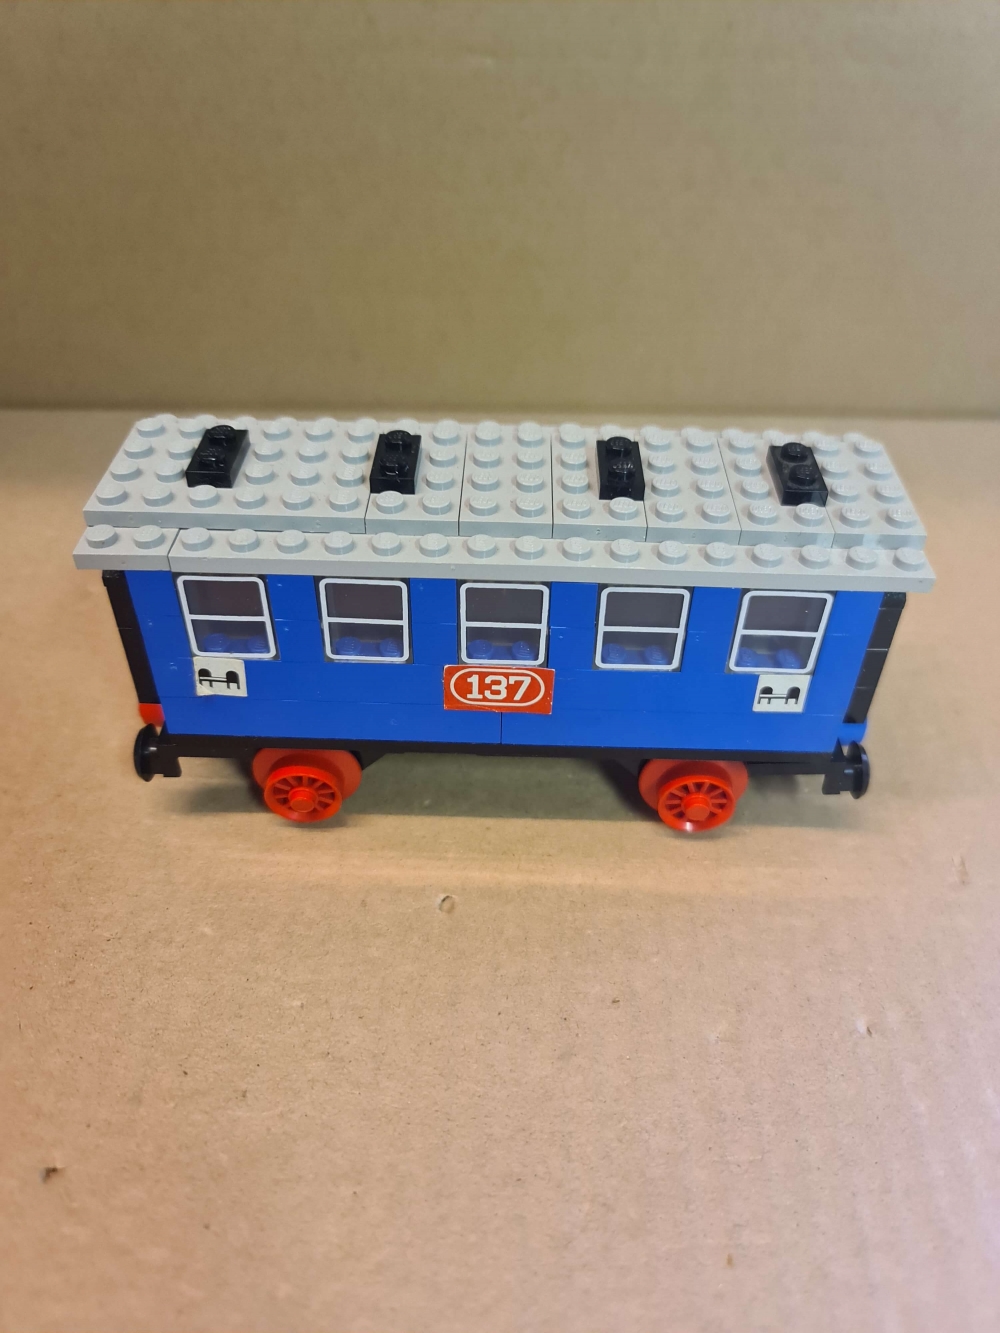 Sett 137 fra Lego Train : 4.5V serien.
Flott sett. Komplett med alle klistremerker.
Uten manual.